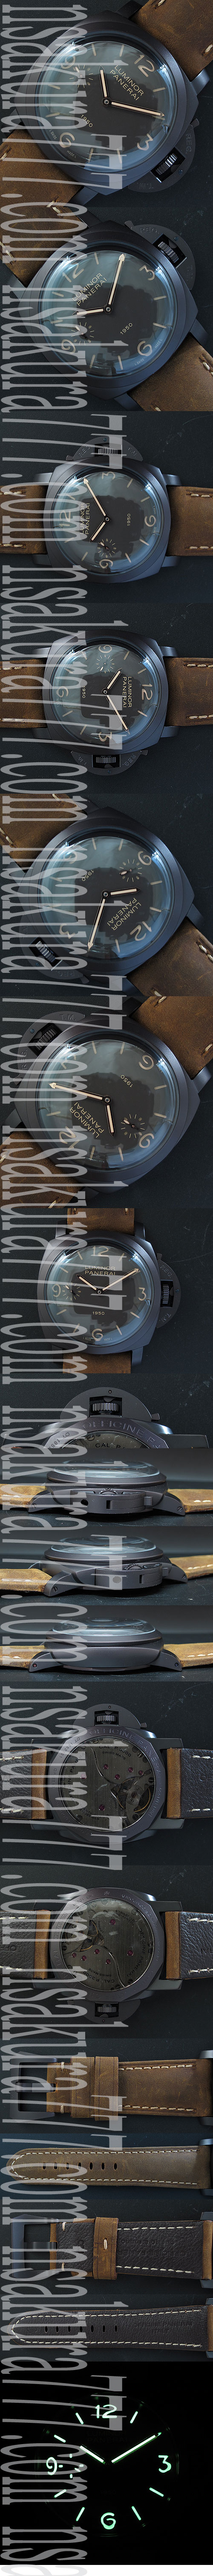 【定番モデル】パネライルミノール PAM375自社製腕時計